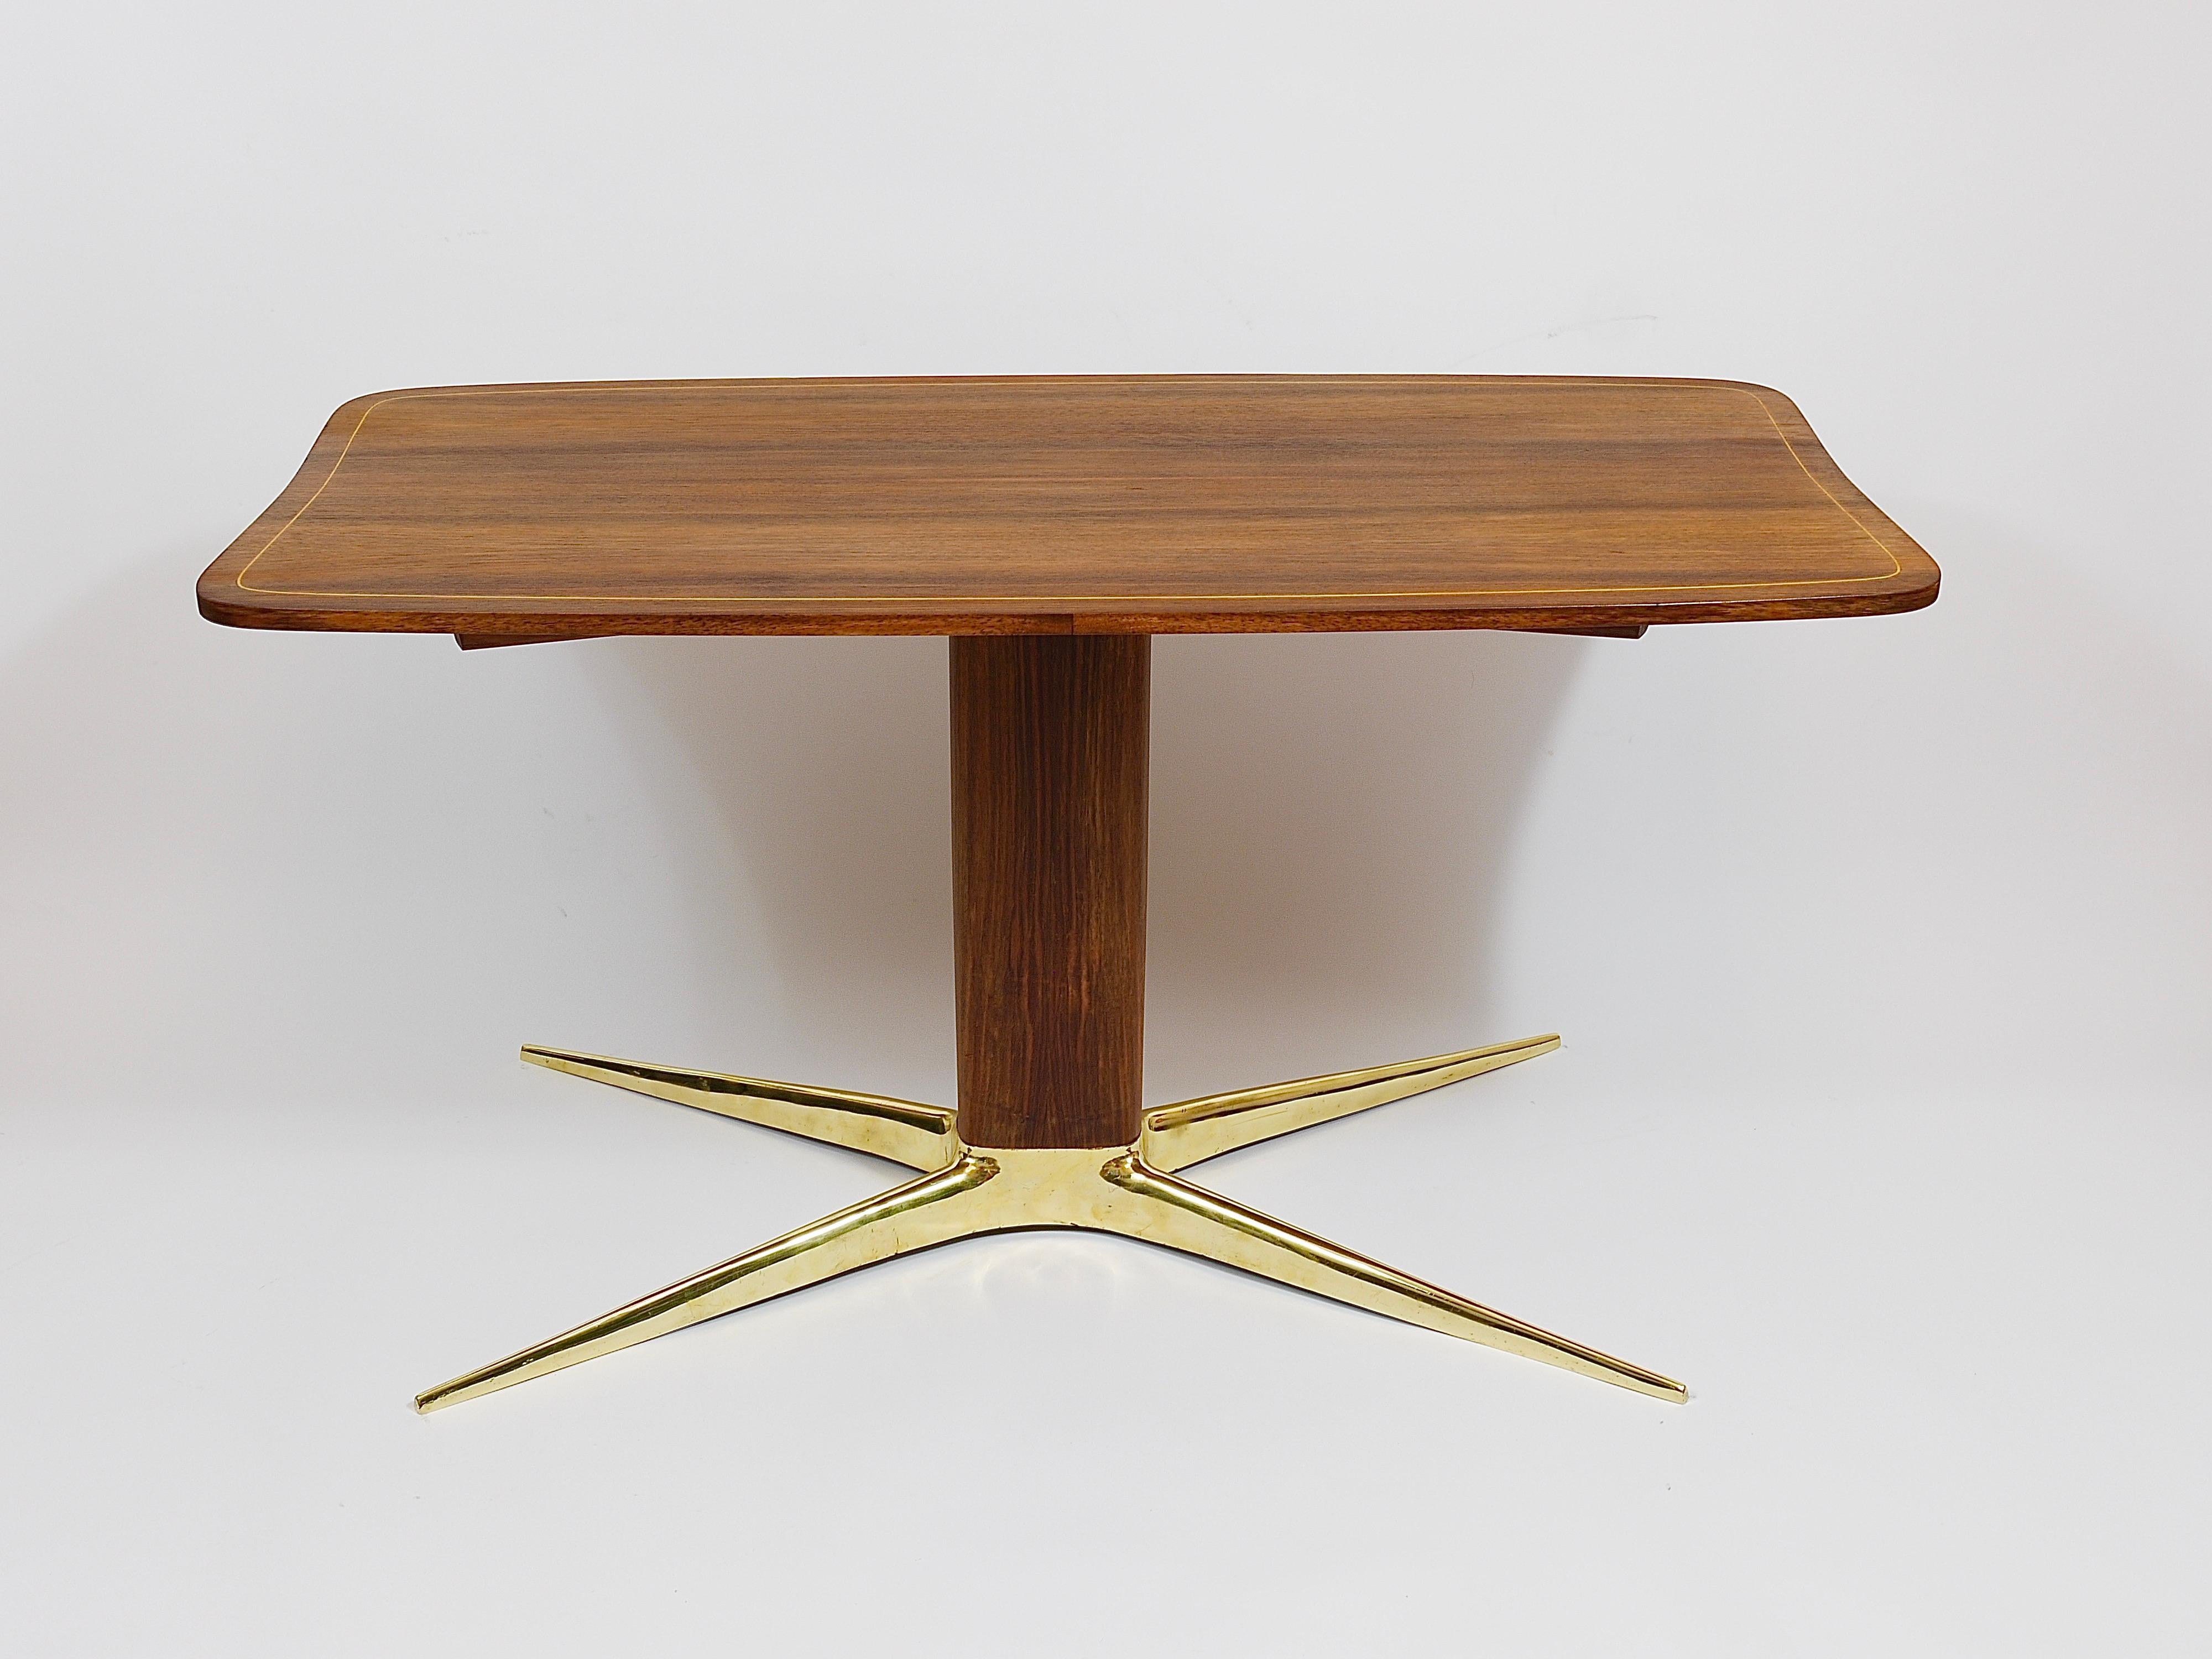 Une élégante table basse ou table de canapé des années 1950, conçue par l'architecte et designer autrichien Oswald Haerdtl. Une belle table avec un beau plateau incurvé, une tige centrale ovale en noyer et la base typique en forme de X, en laiton